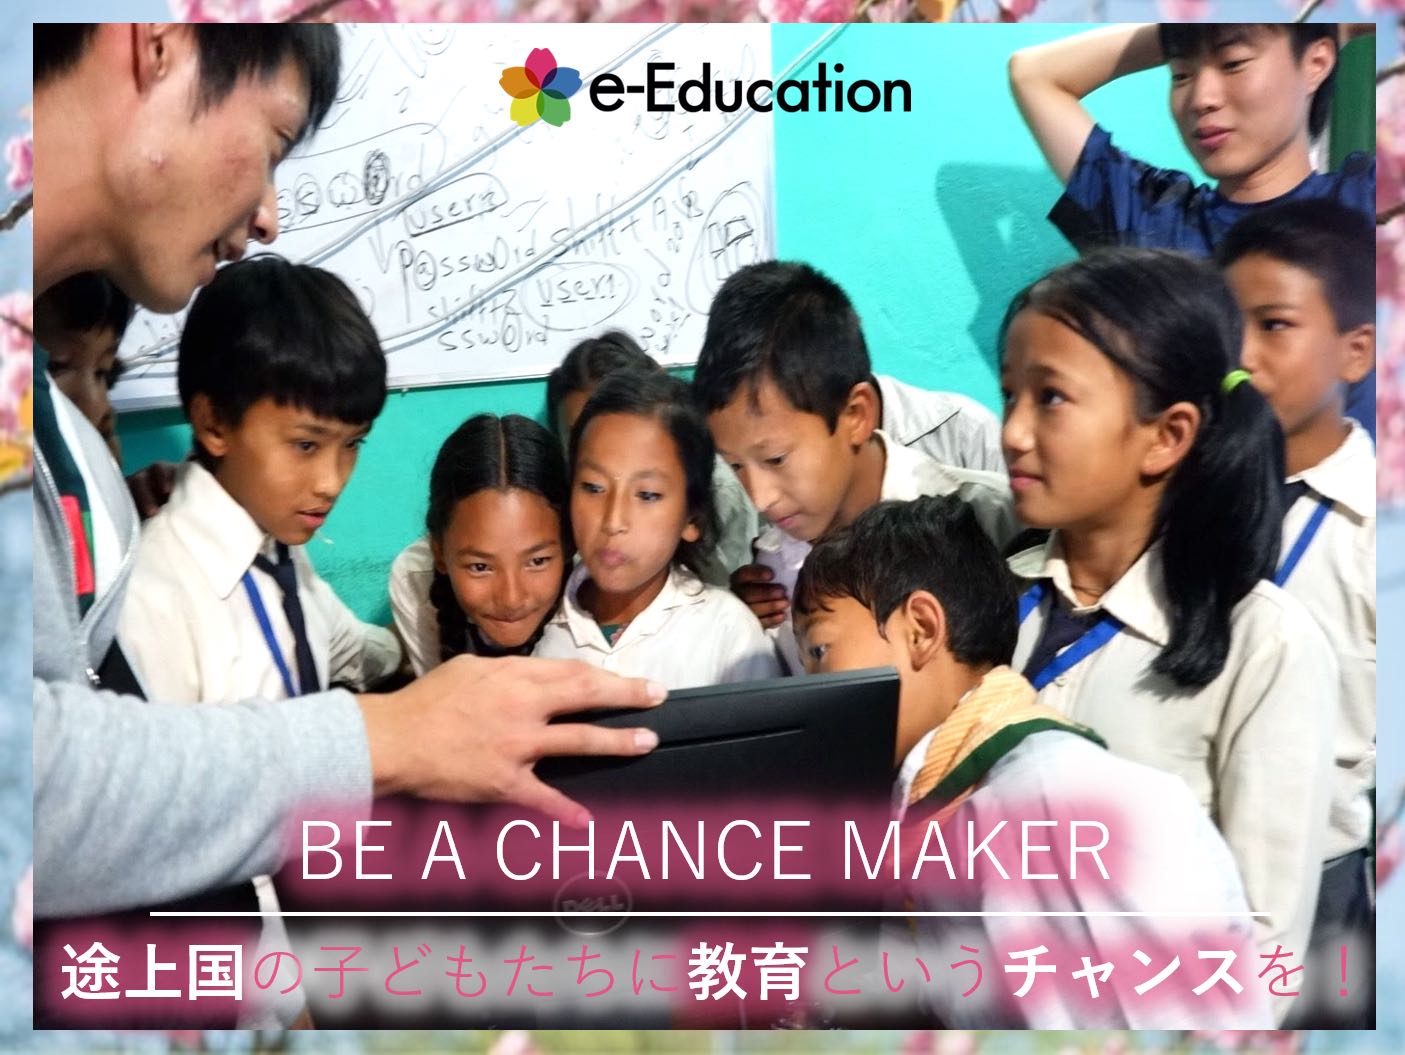 春季キャンペーン【Be A Chance Maker~途上国の子どもたちに教育というチャンスを~】が始まります！